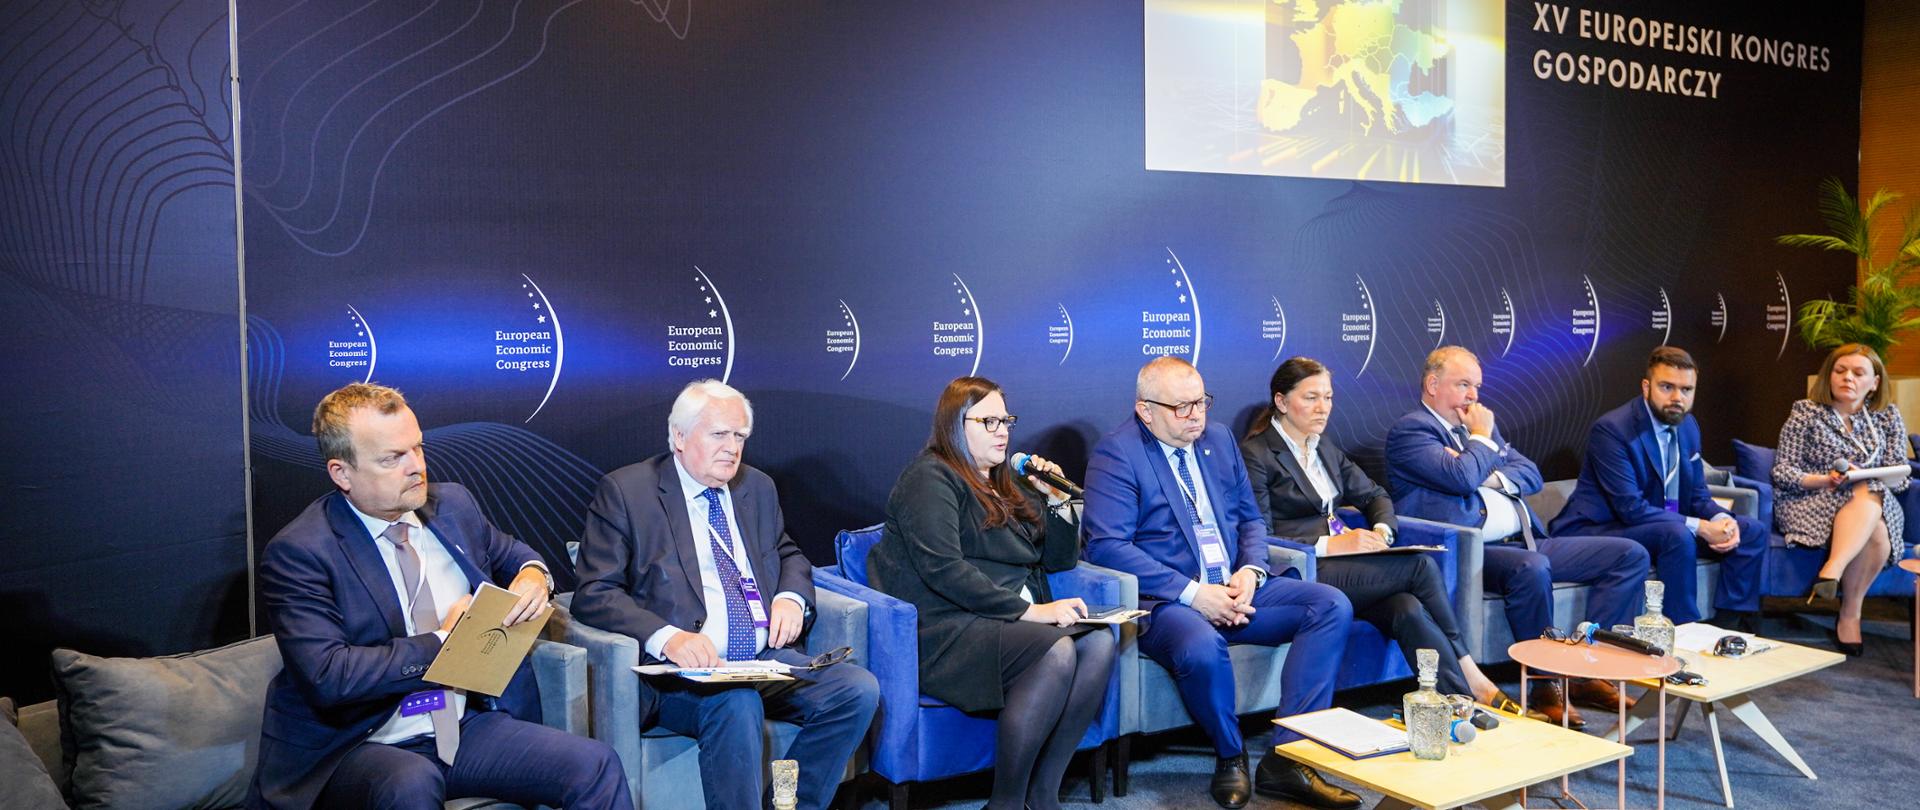 W sali konferencyjnej grupa osób siedzi w fotelach przed stolikami. Wiceminister Małgorzata Jarosińska-Jedynak z mikrofonem.